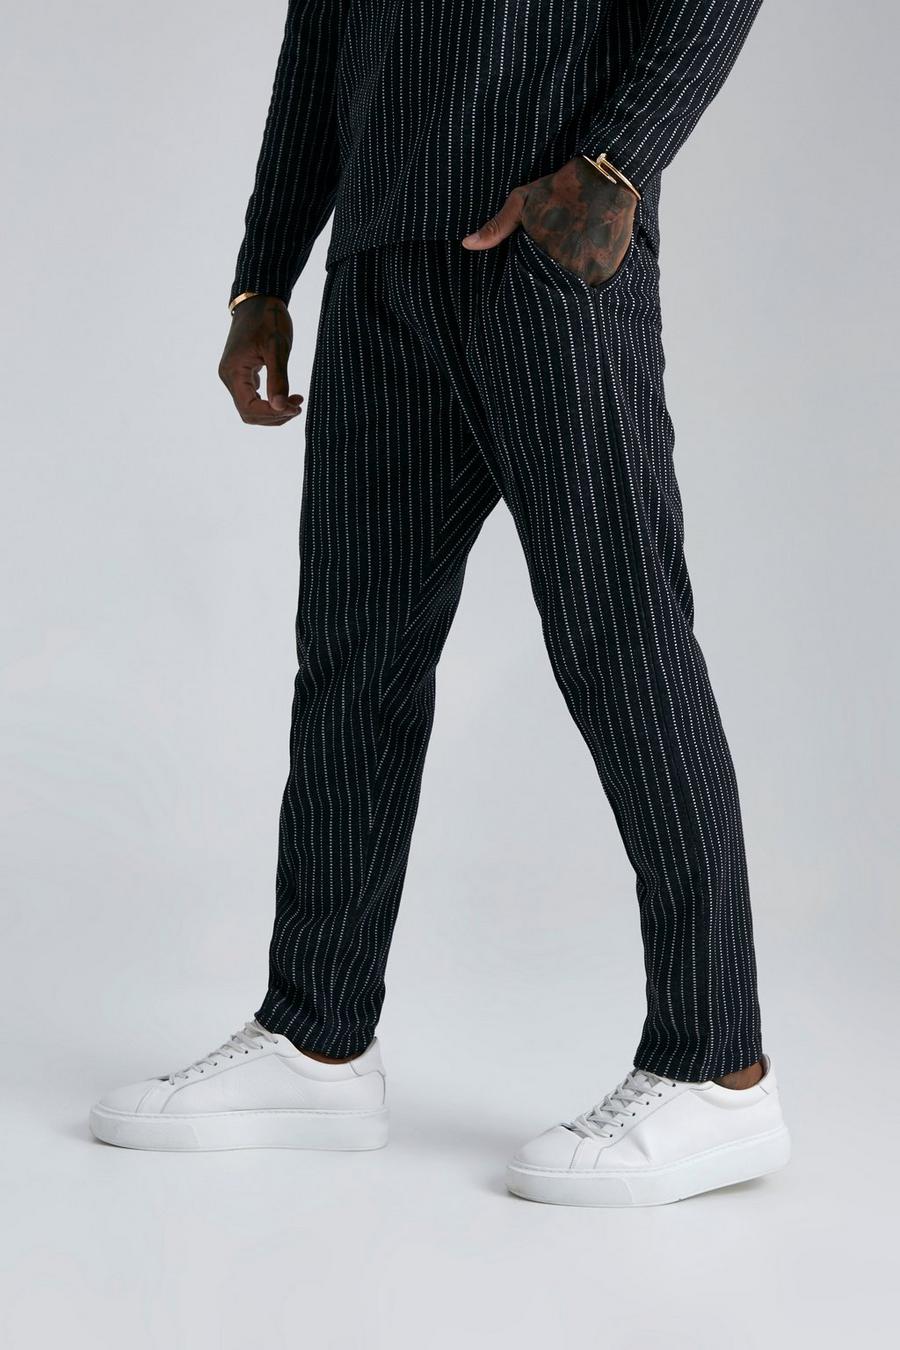 Pantaloni tuta affusolati in jacquard a righe, Black nero